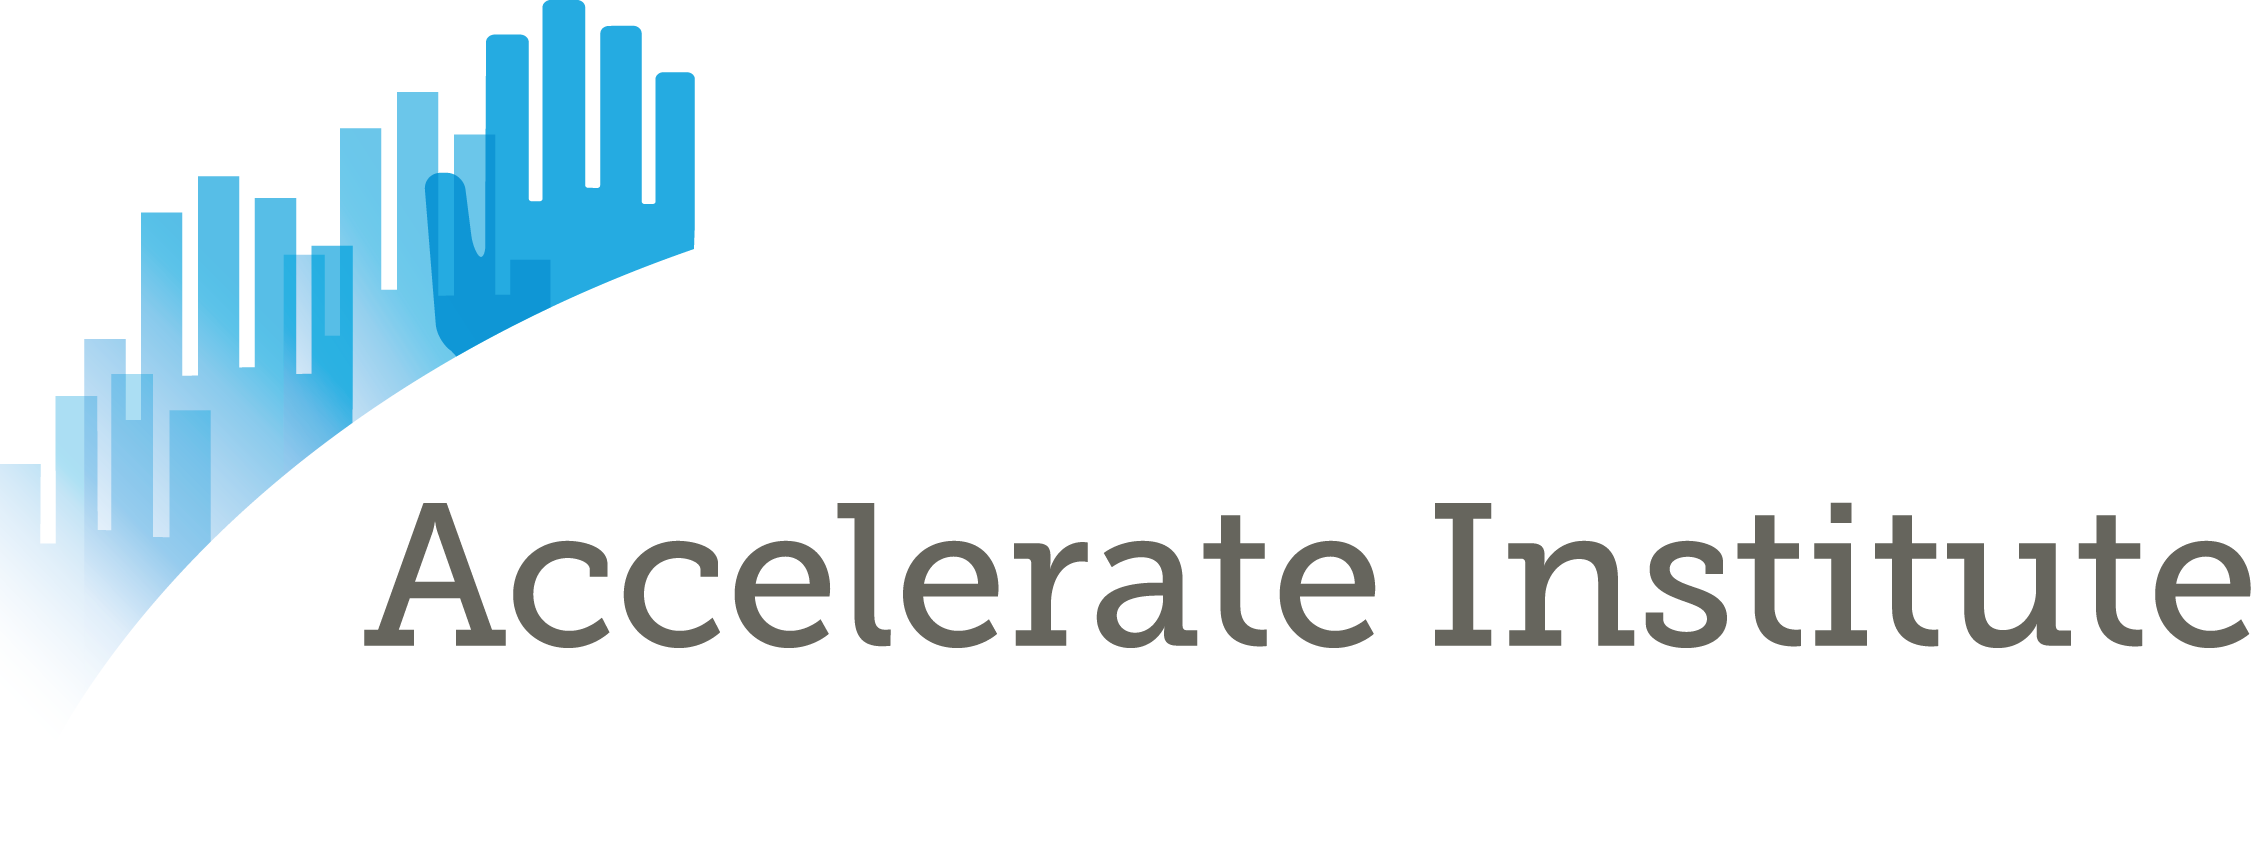 Accelerate Institute Application Portal logo